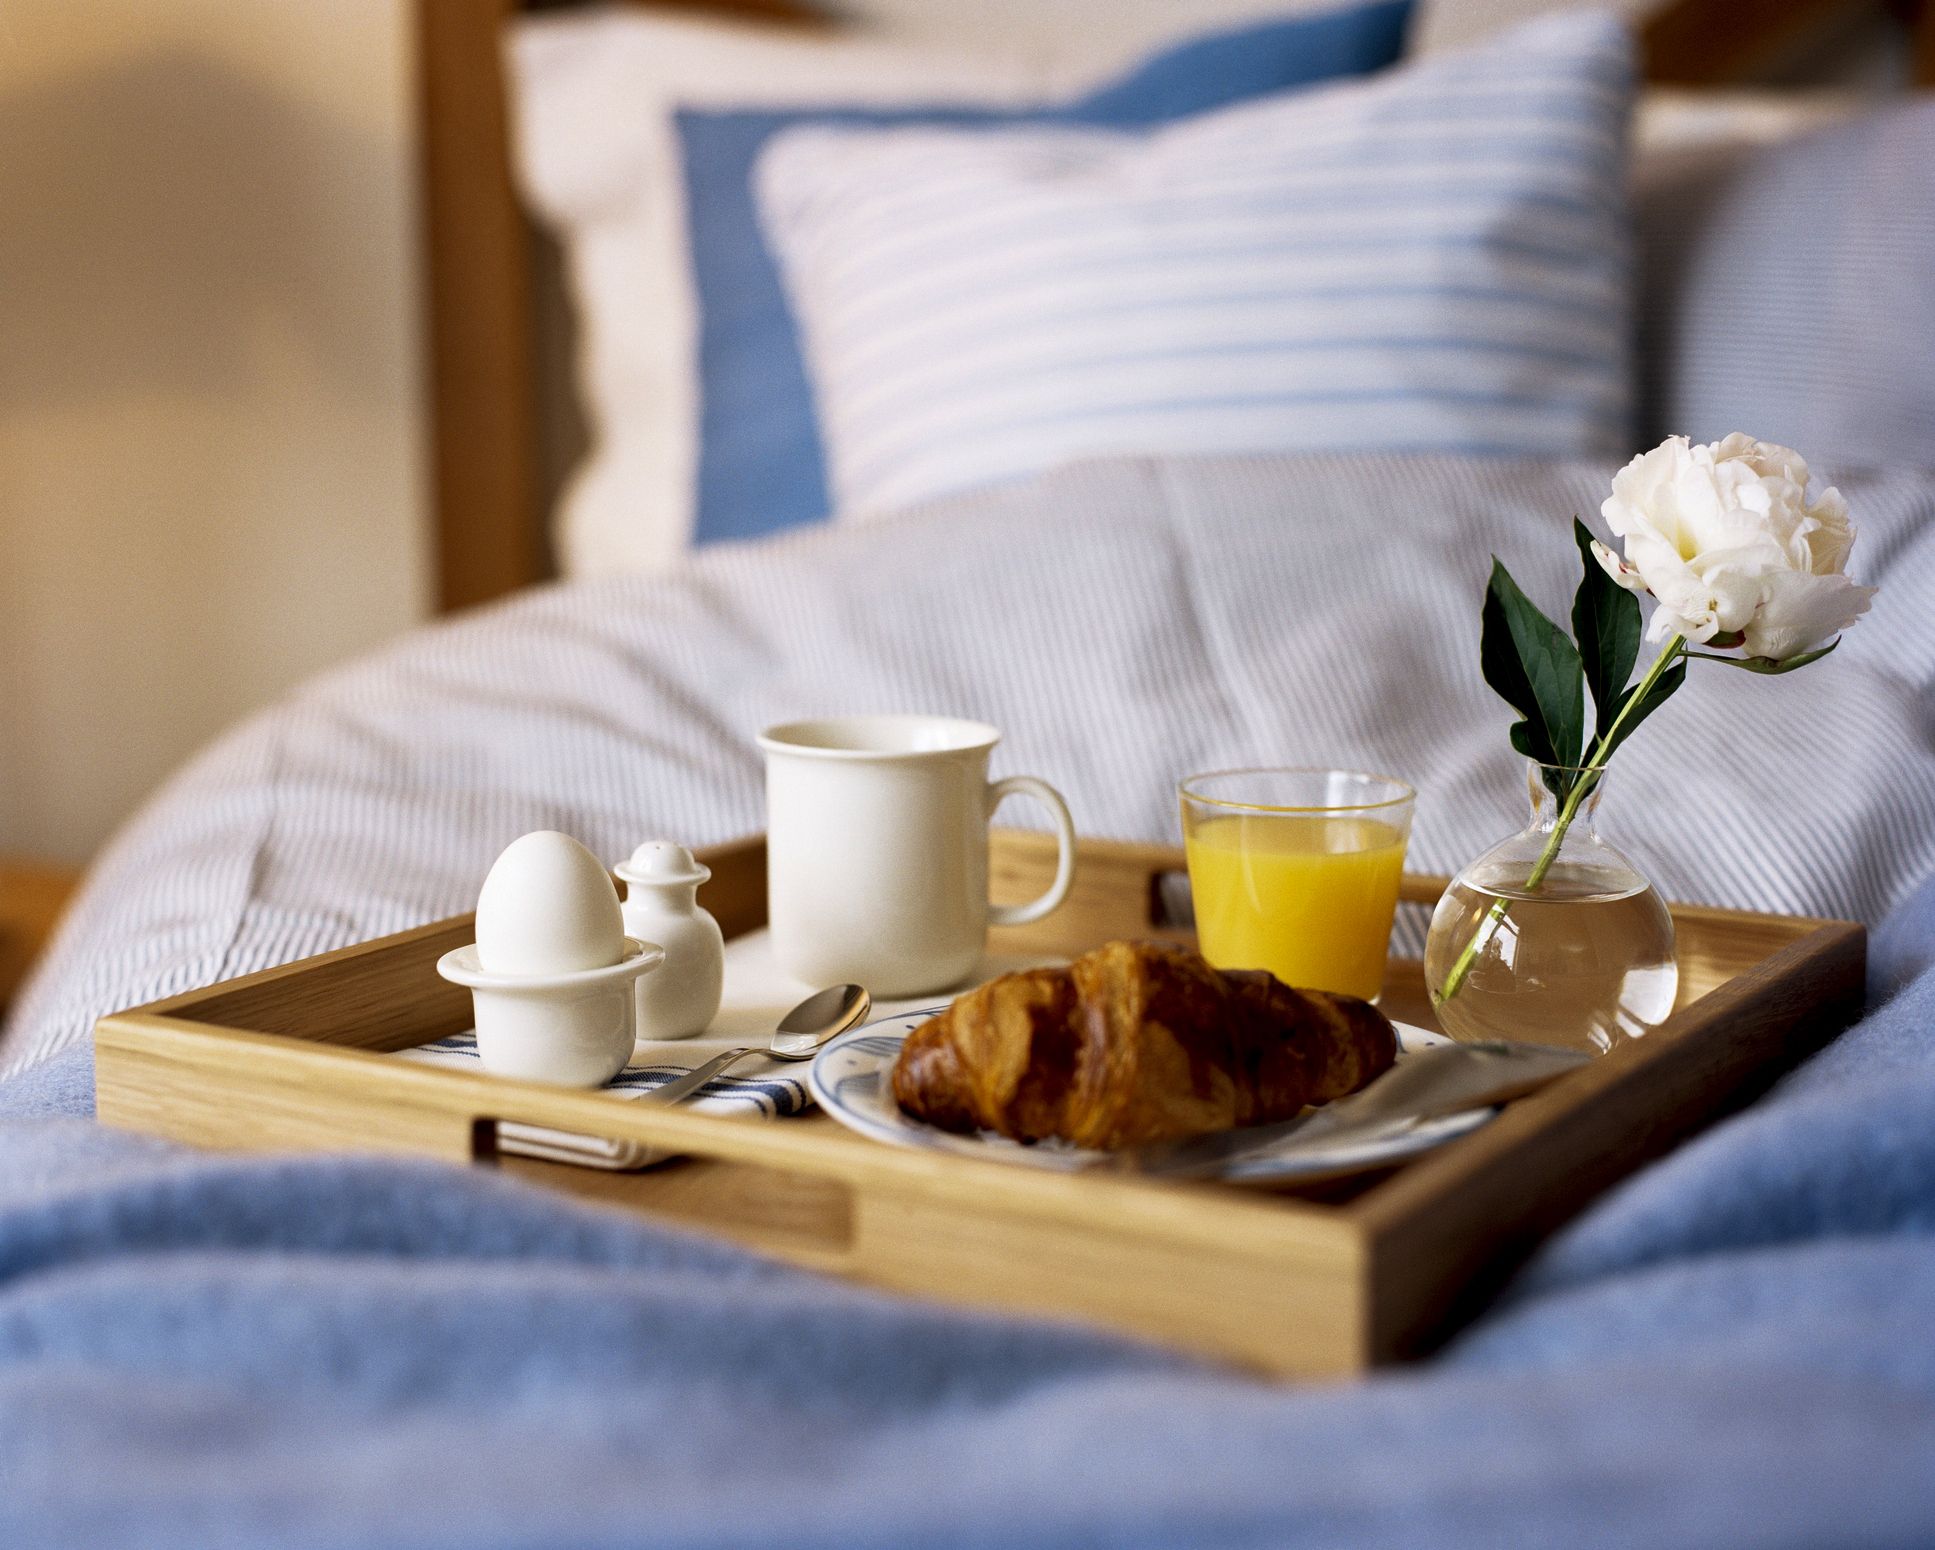 Спать после завтрака. Кофе в постель. Завтрак в постель. Романтический завтрак в постель. Романтическое утро.